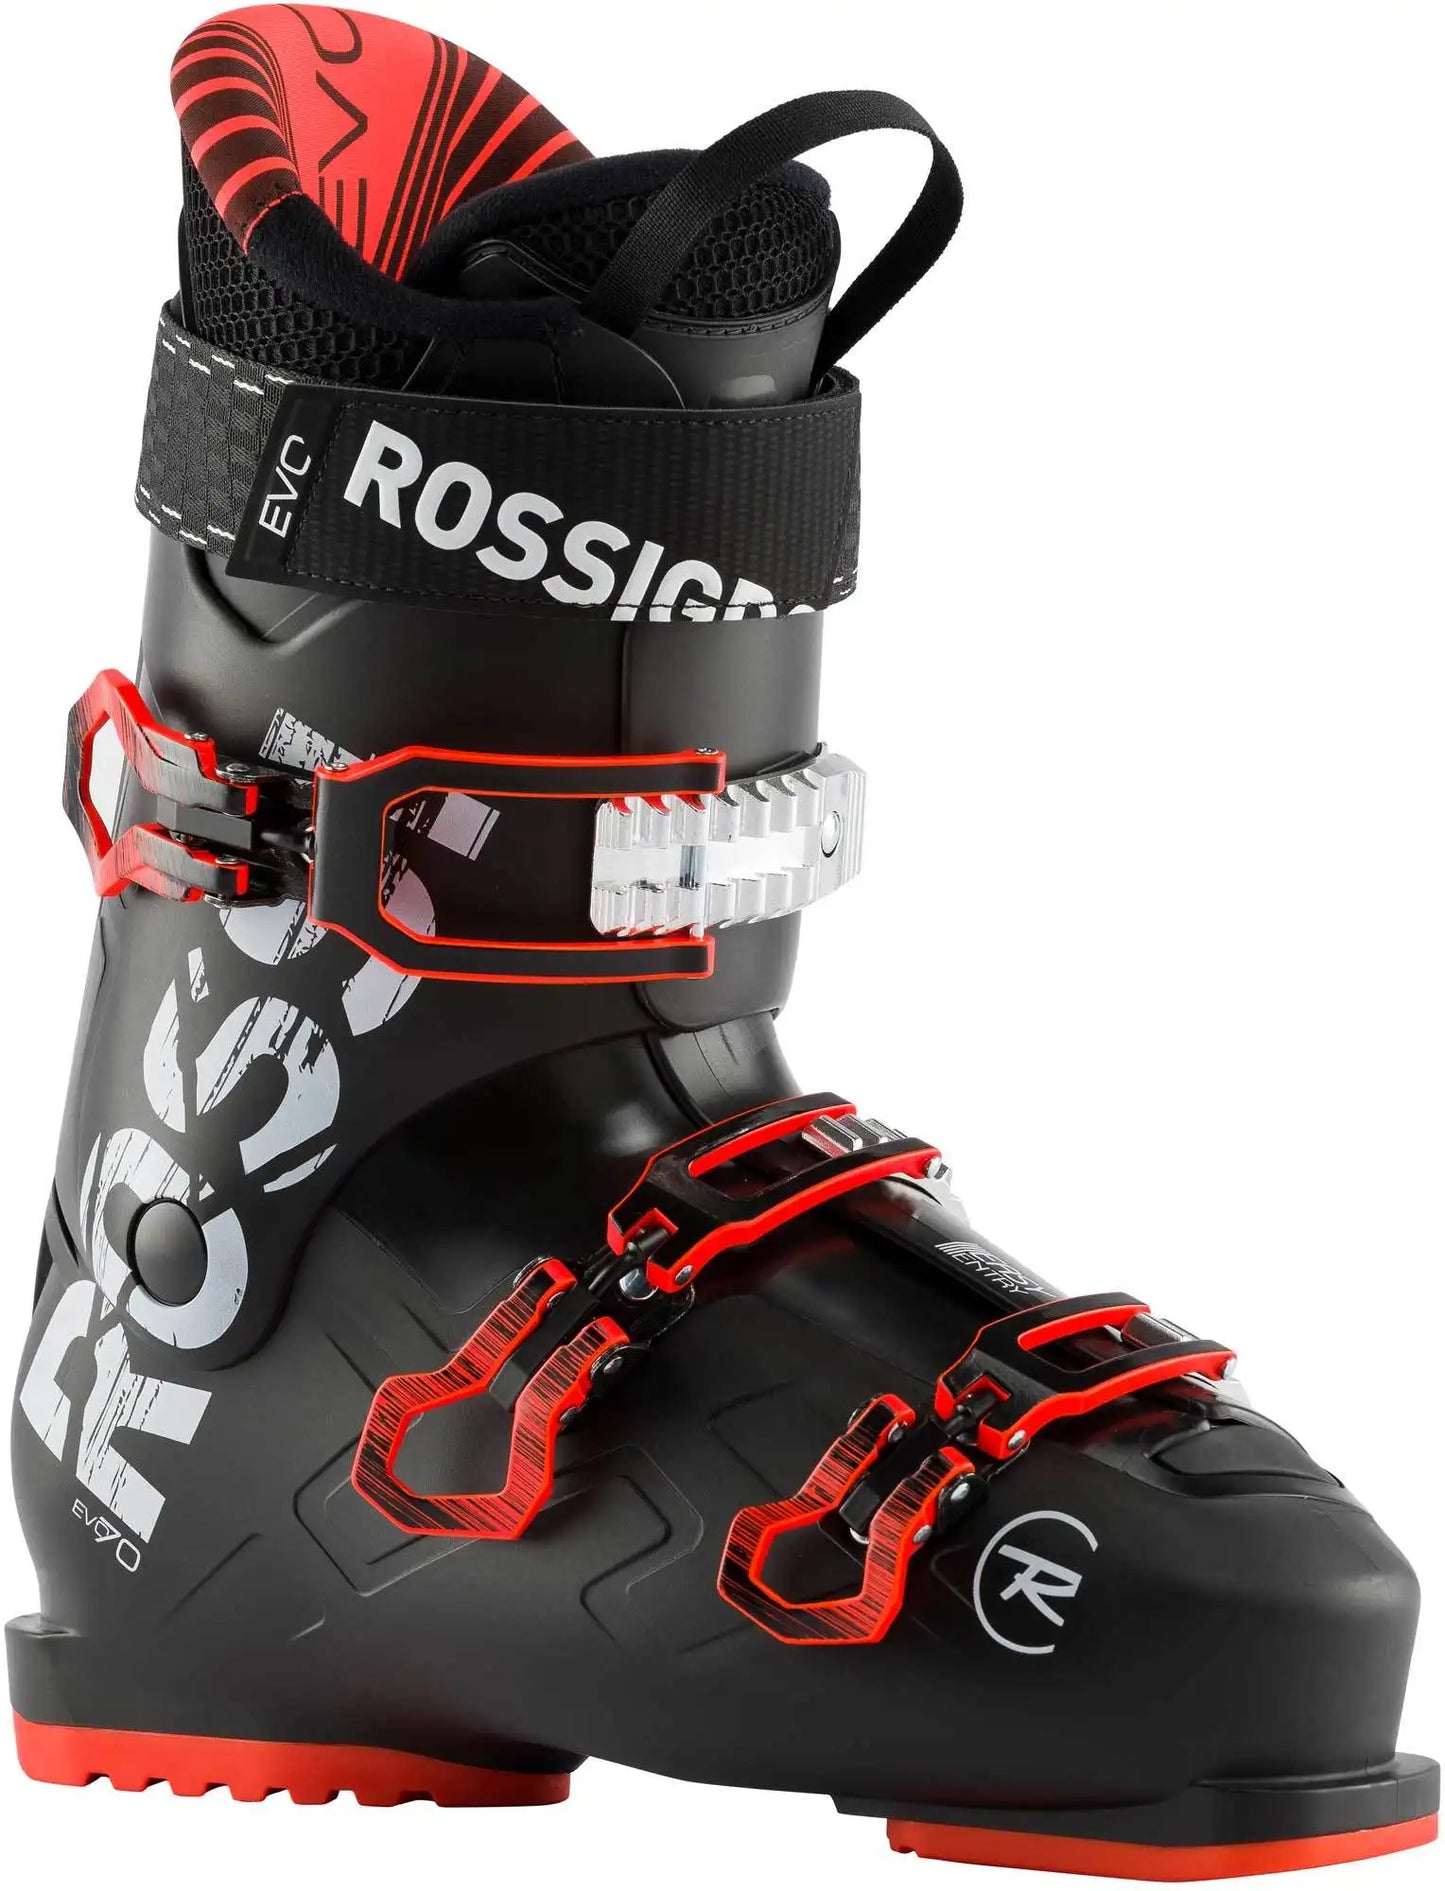 Rossignol Evo Ski Boot